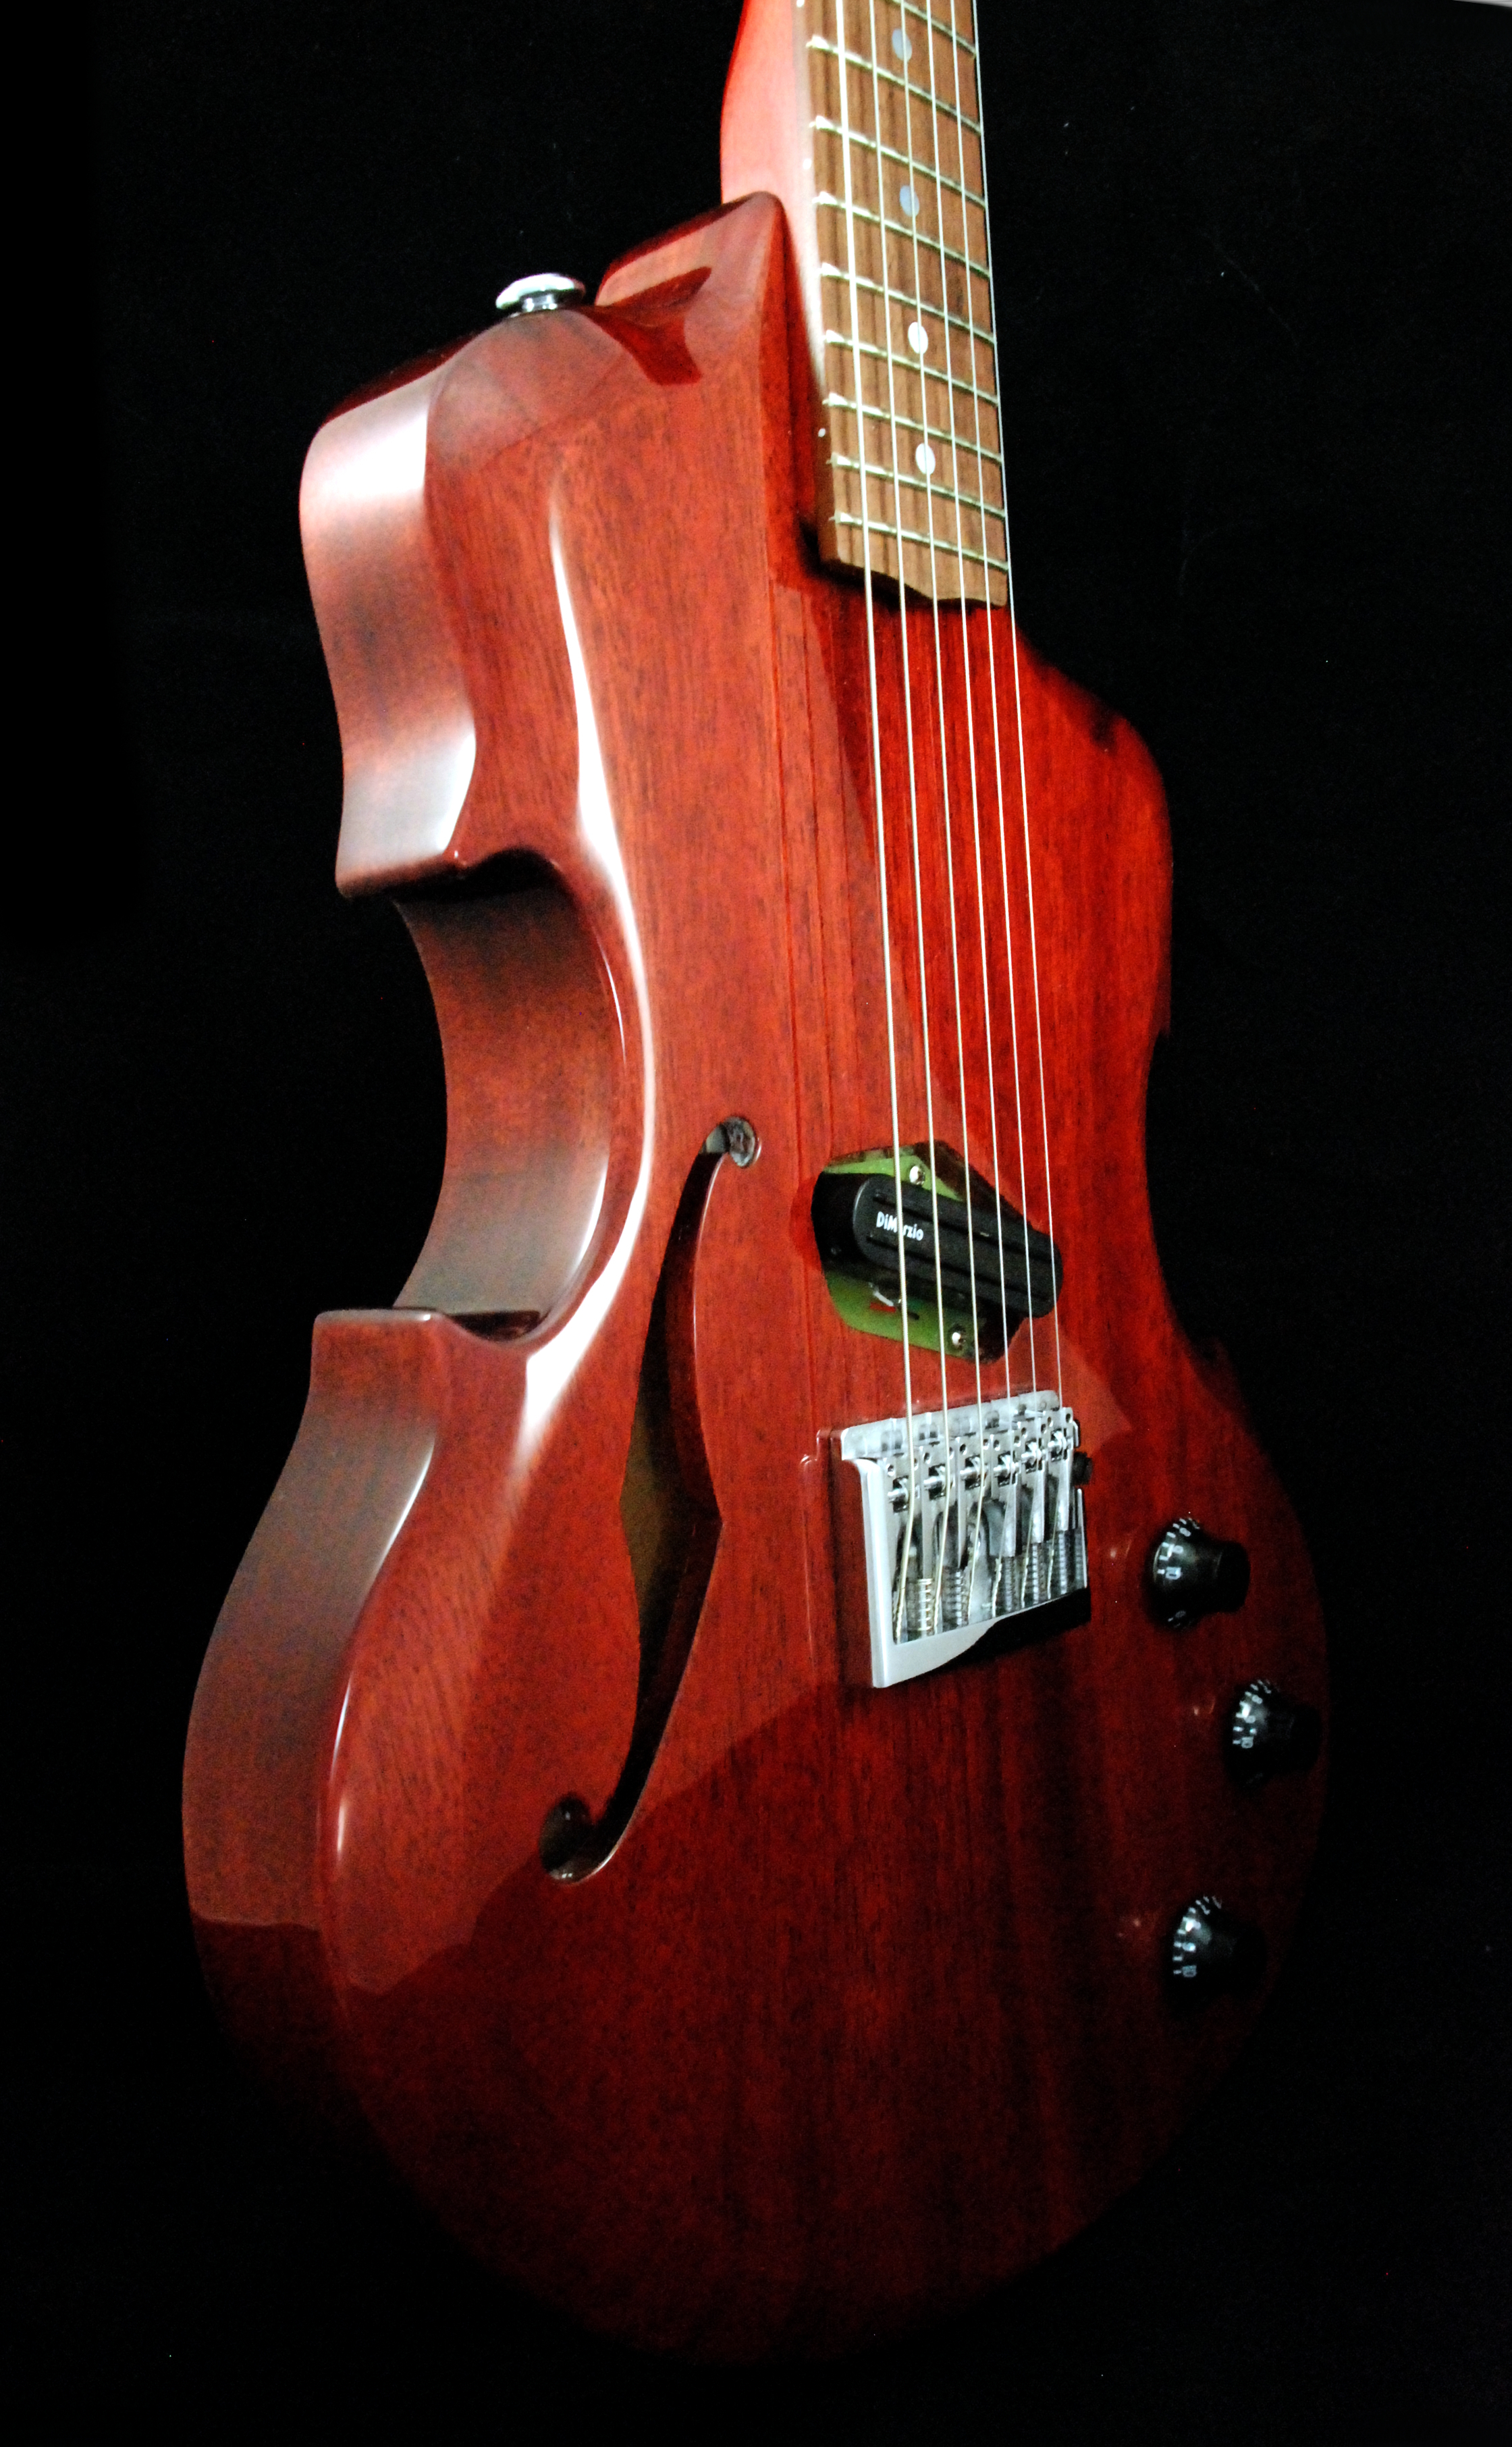 red violin (7)